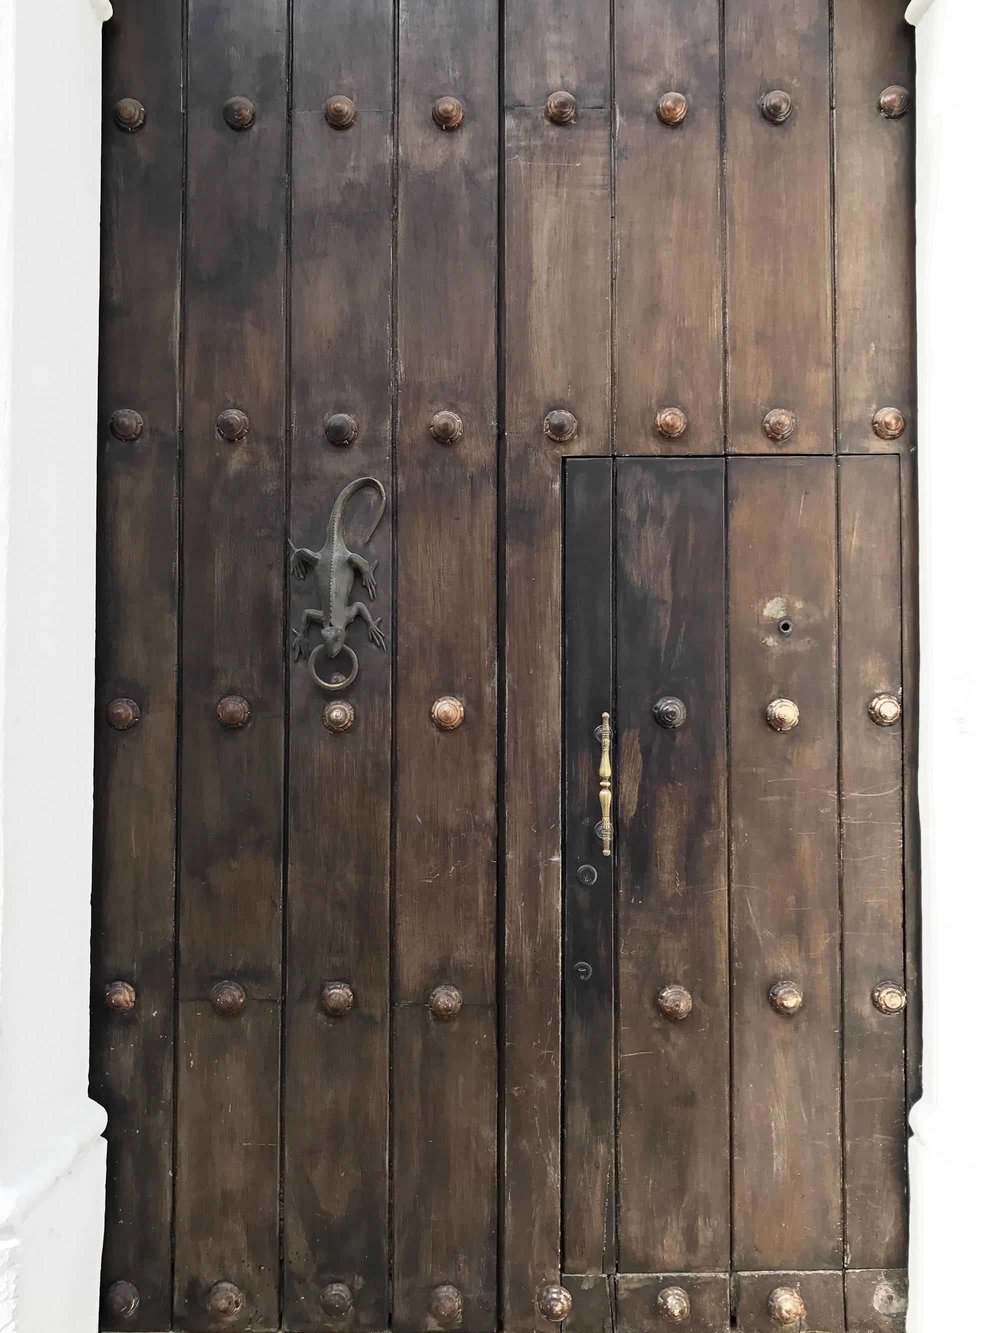 Lizard door knocker | Doors and Door Knockers of Cartagena, Colombia | pictures of Cartagena, Colombia